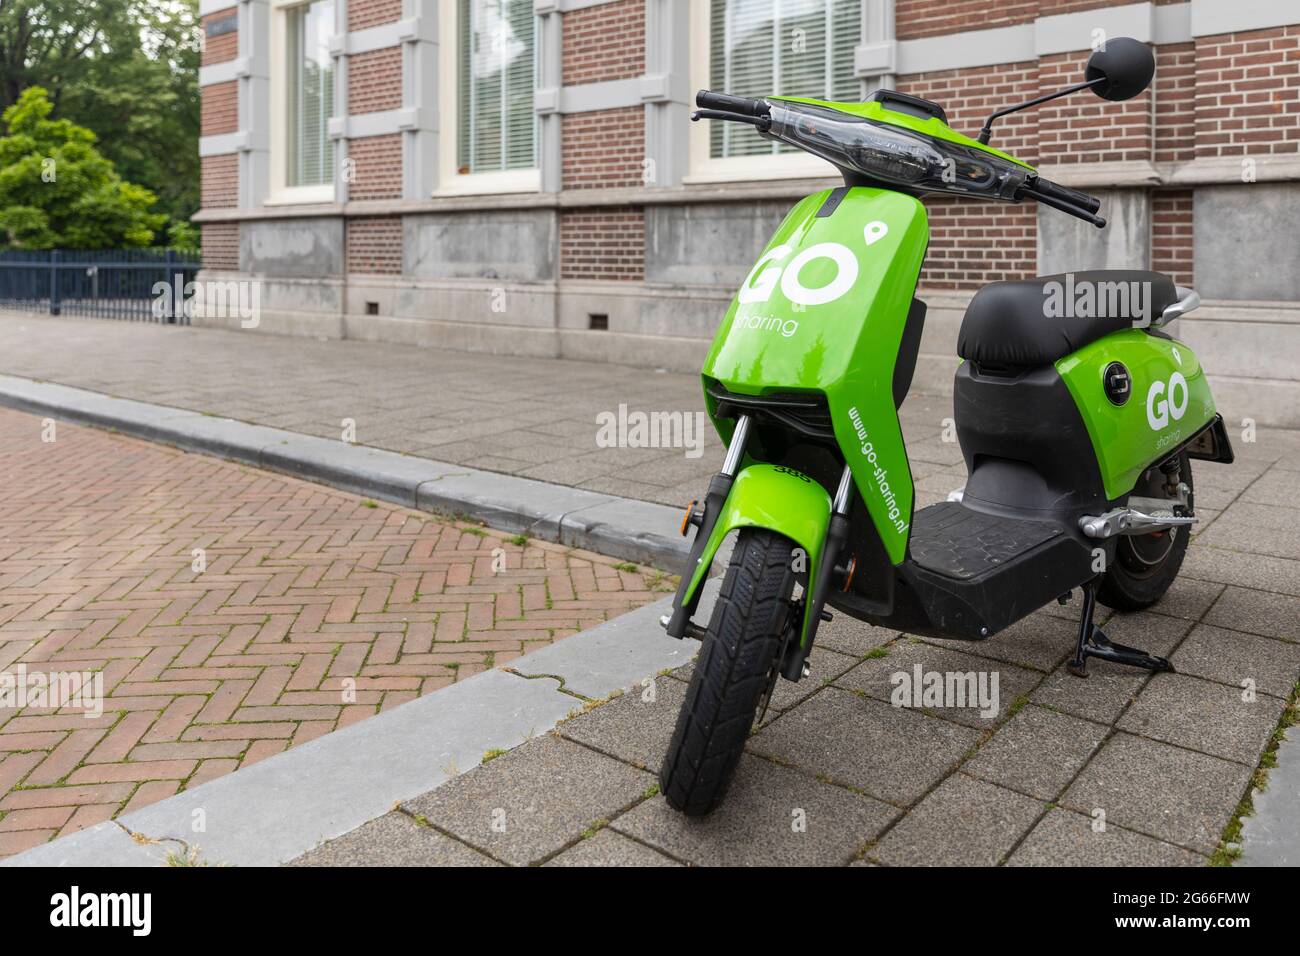 Breda, Niederlande 28. Juni 2021. Grüner Elektroroller, der auf einem Bürgersteig in der Stadt geparkt ist und über eine App gemietet und verwendet werden kann. Nachhaltiger Umweltschutz Stockfoto